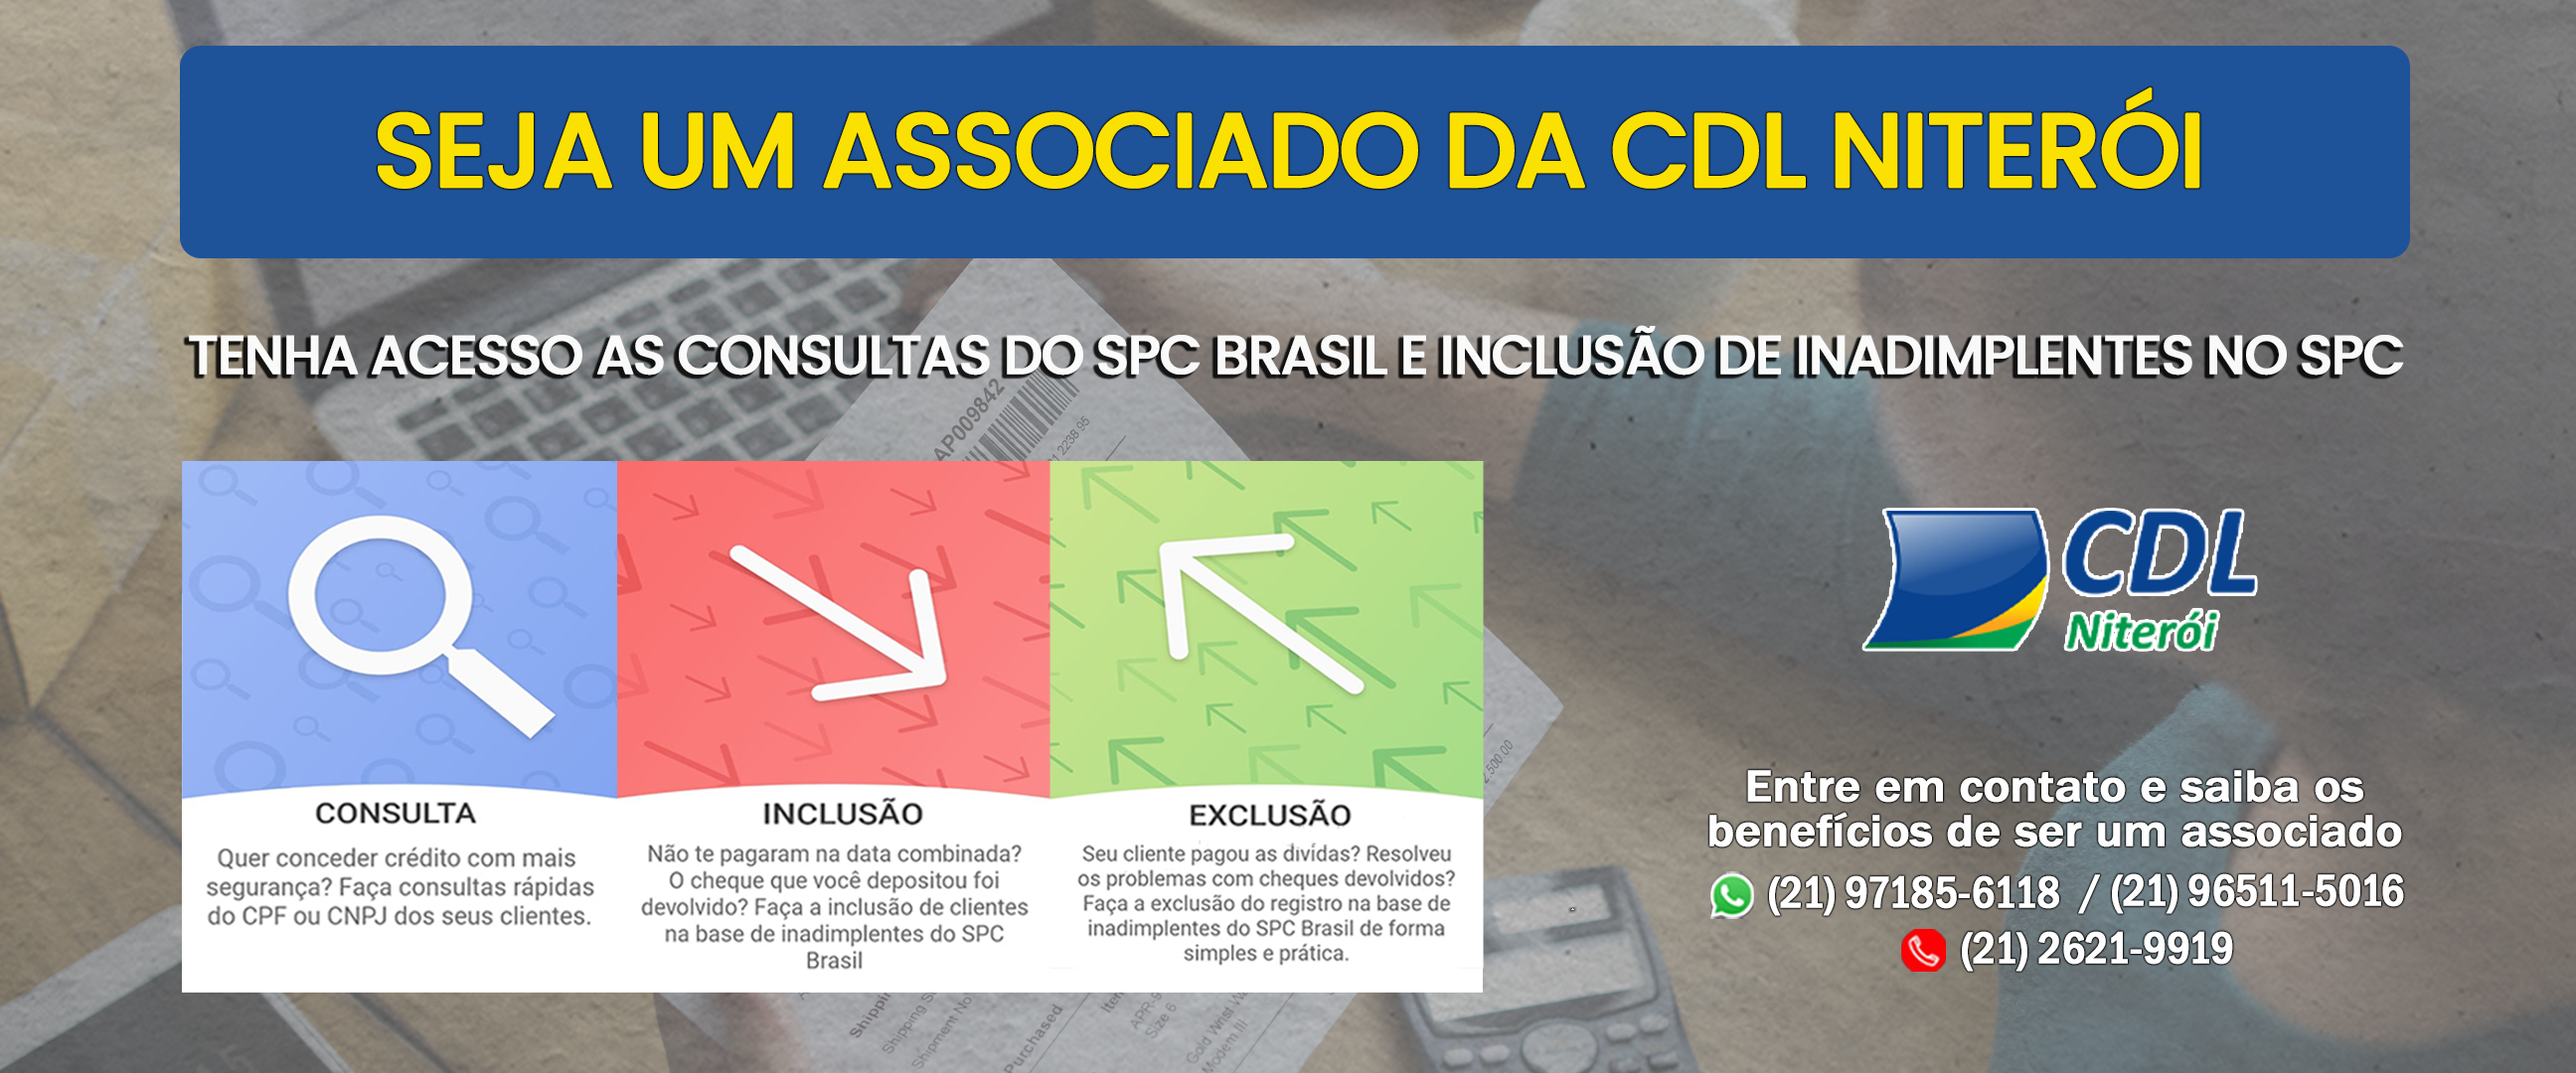 Seja um associado da CDL Niterói